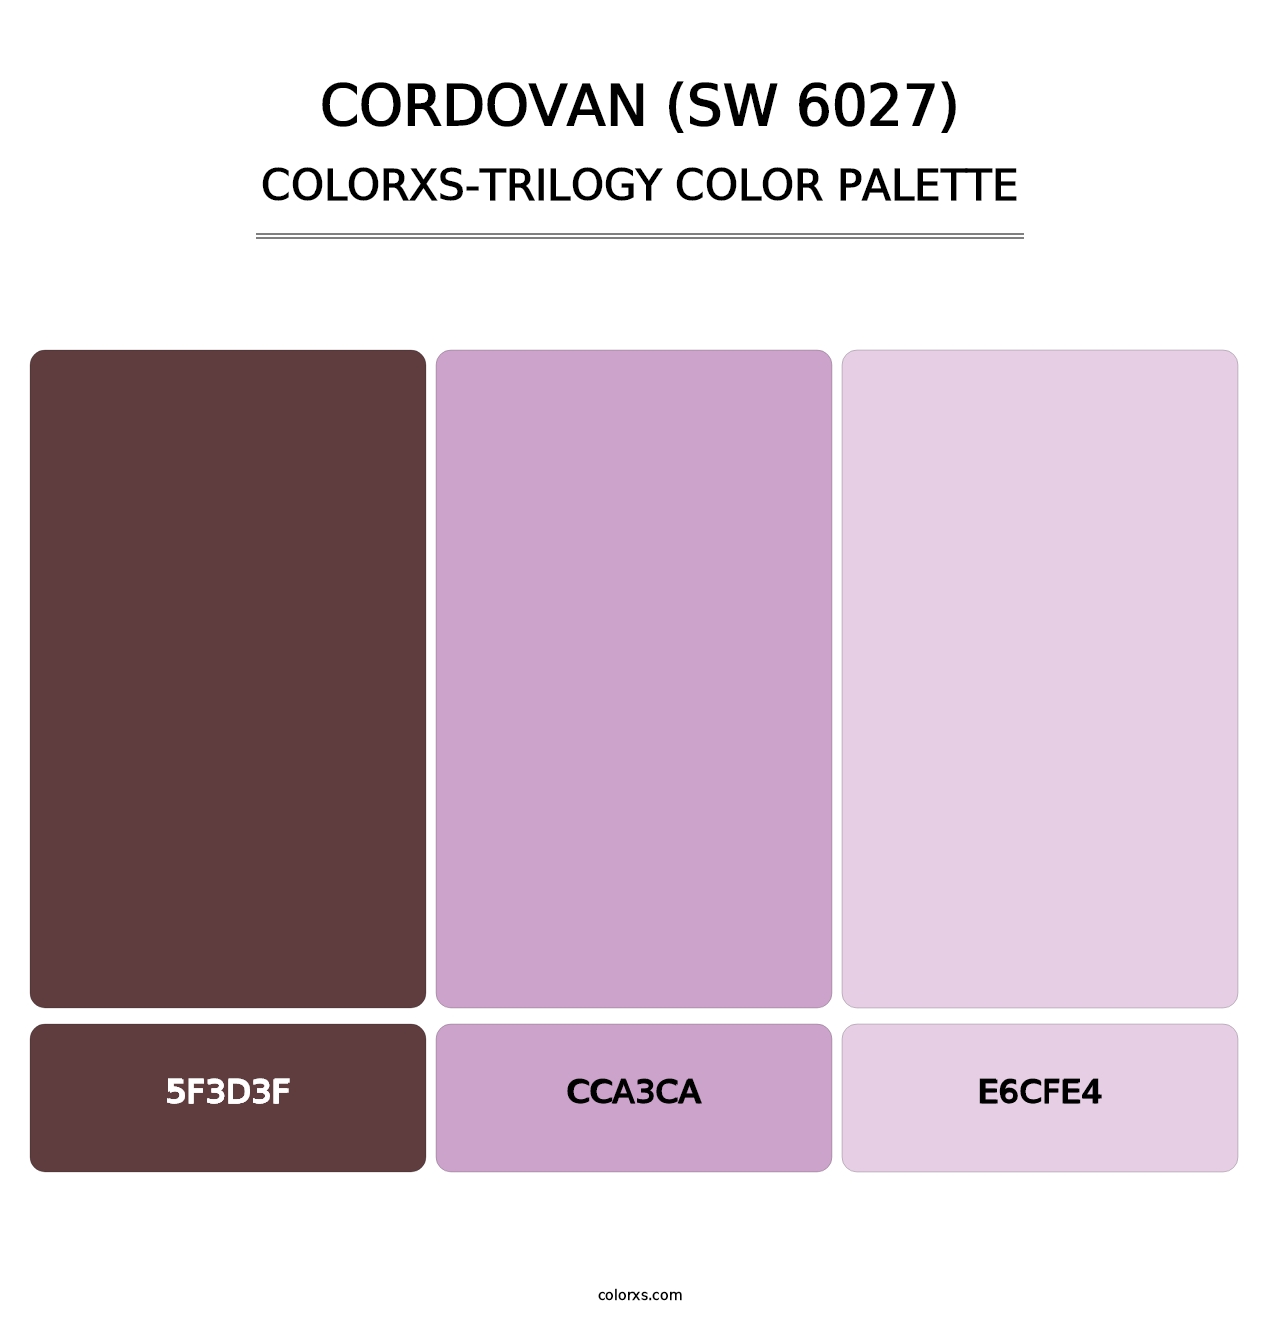 Cordovan (SW 6027) - Colorxs Trilogy Palette